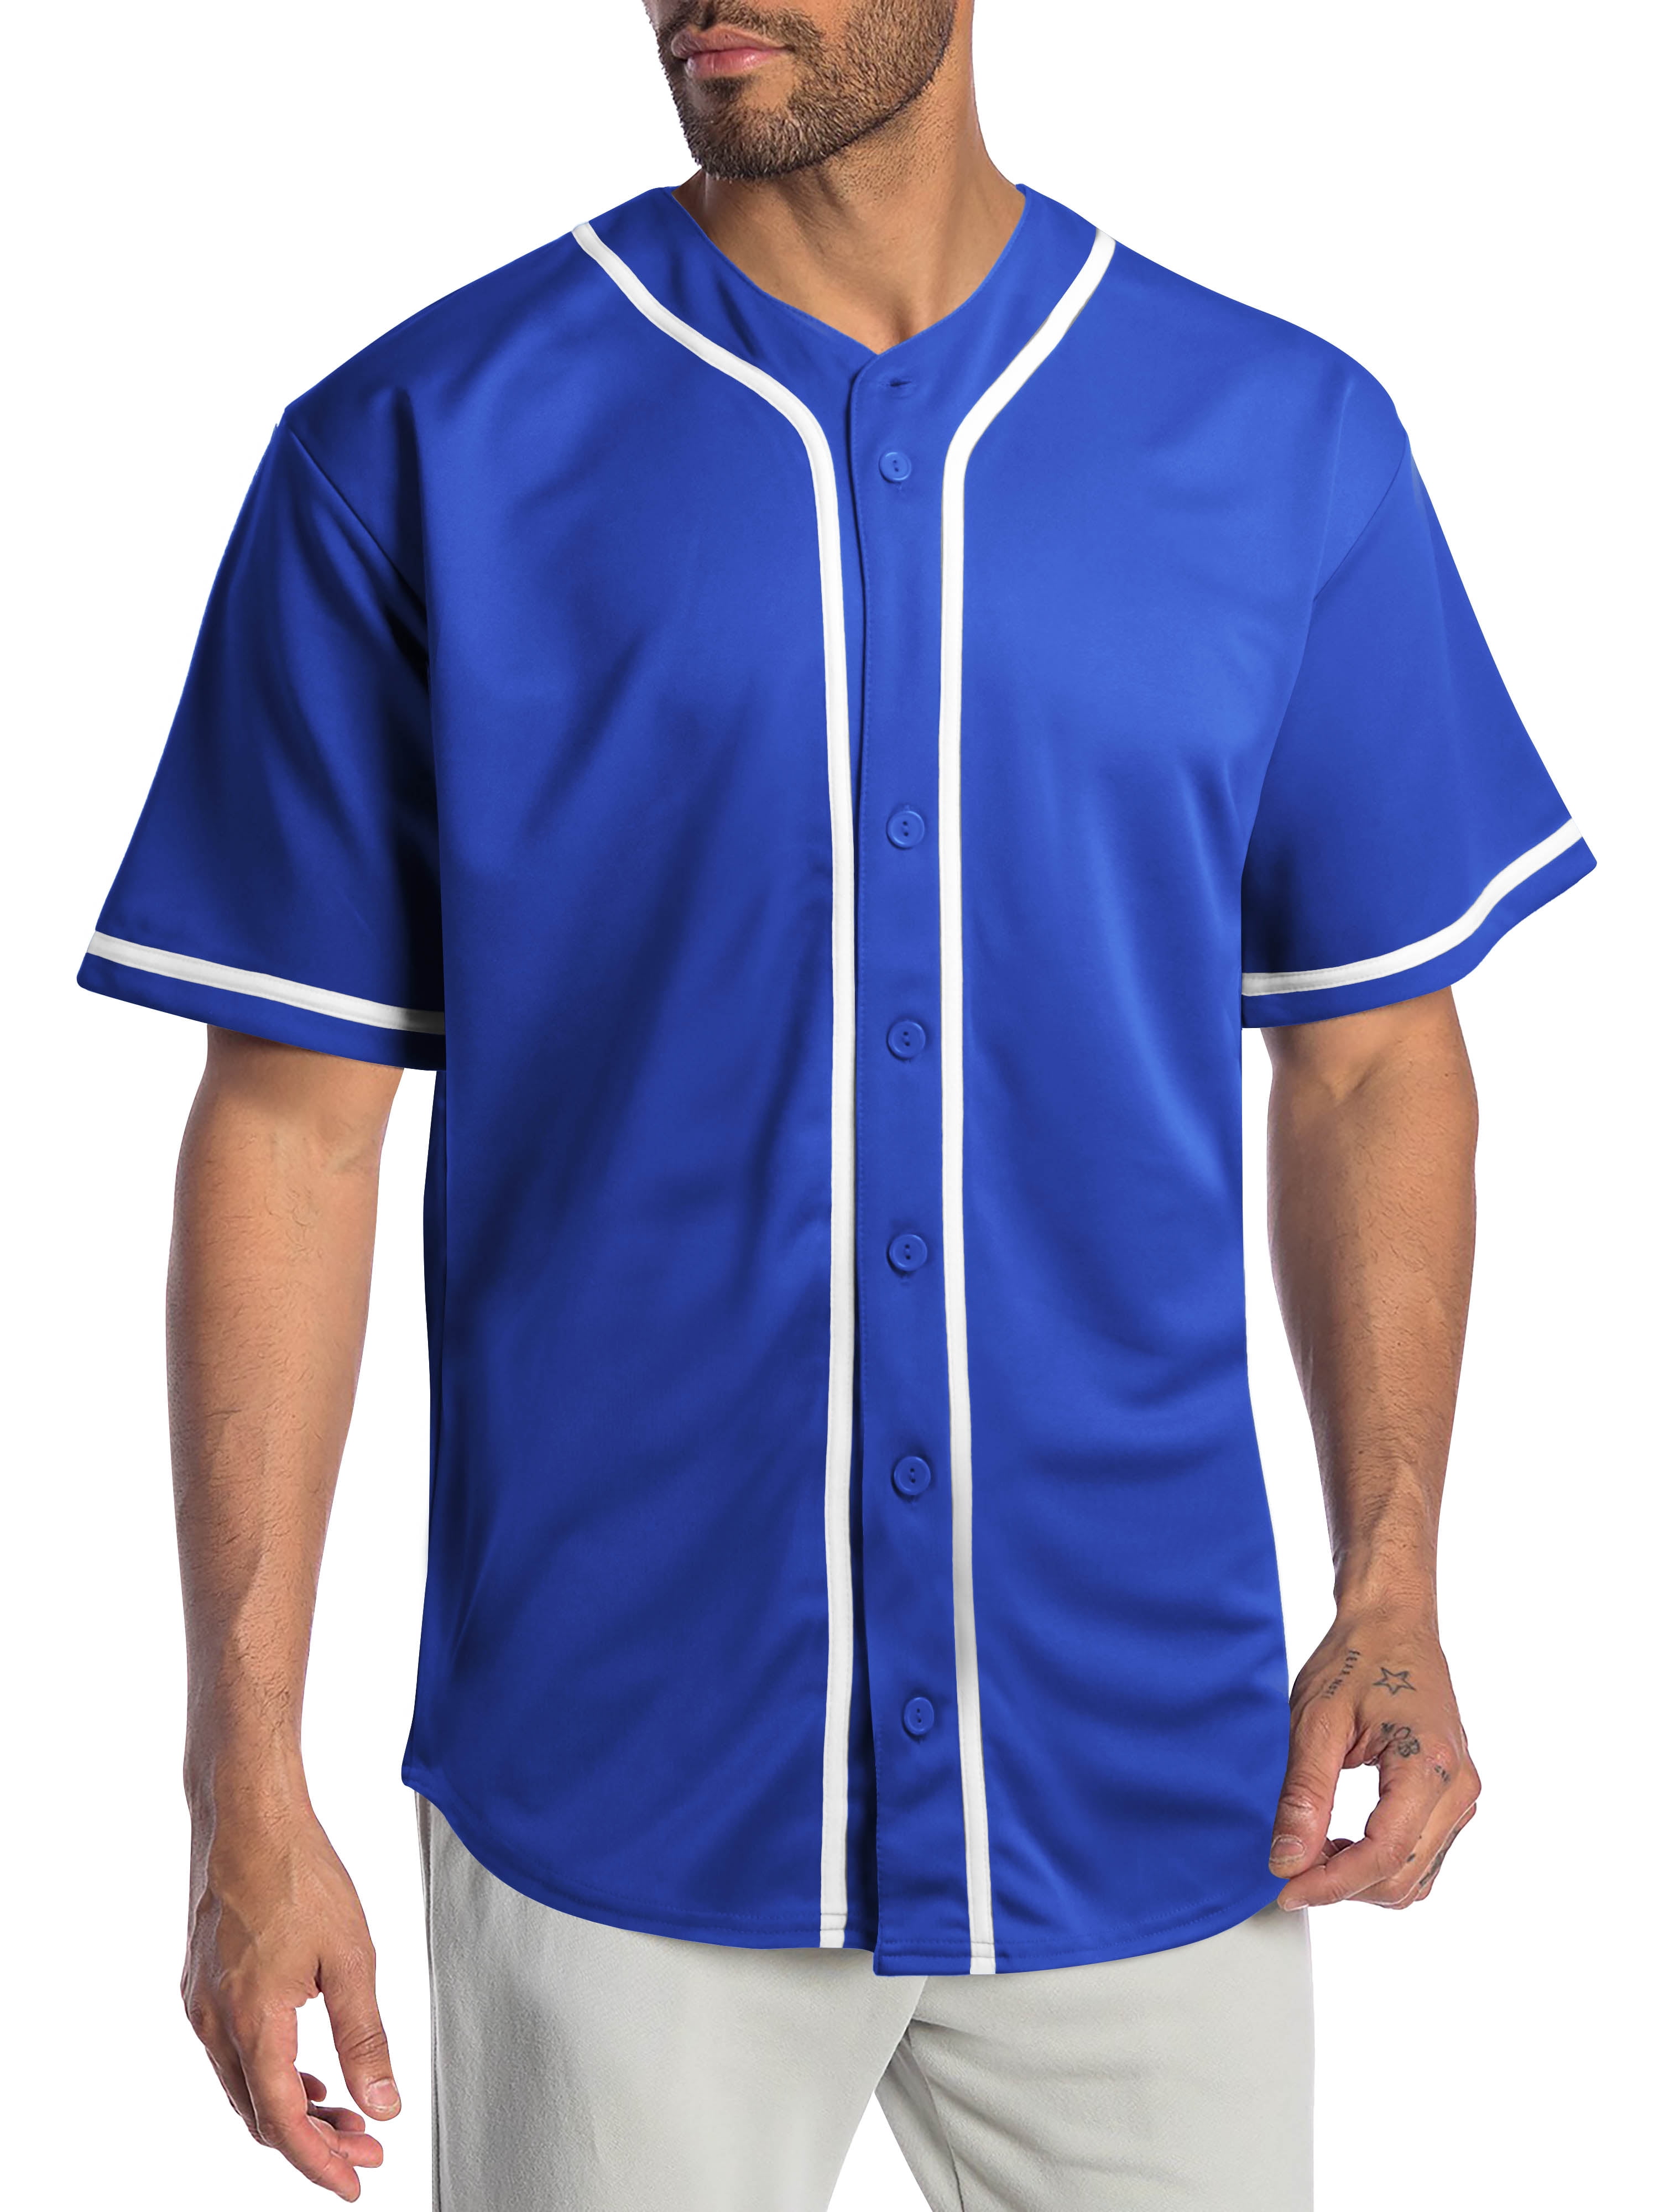 Baseball Plain Jersey T Shirt Button Solid Short Sleeve Sports Uniform Team Tee 